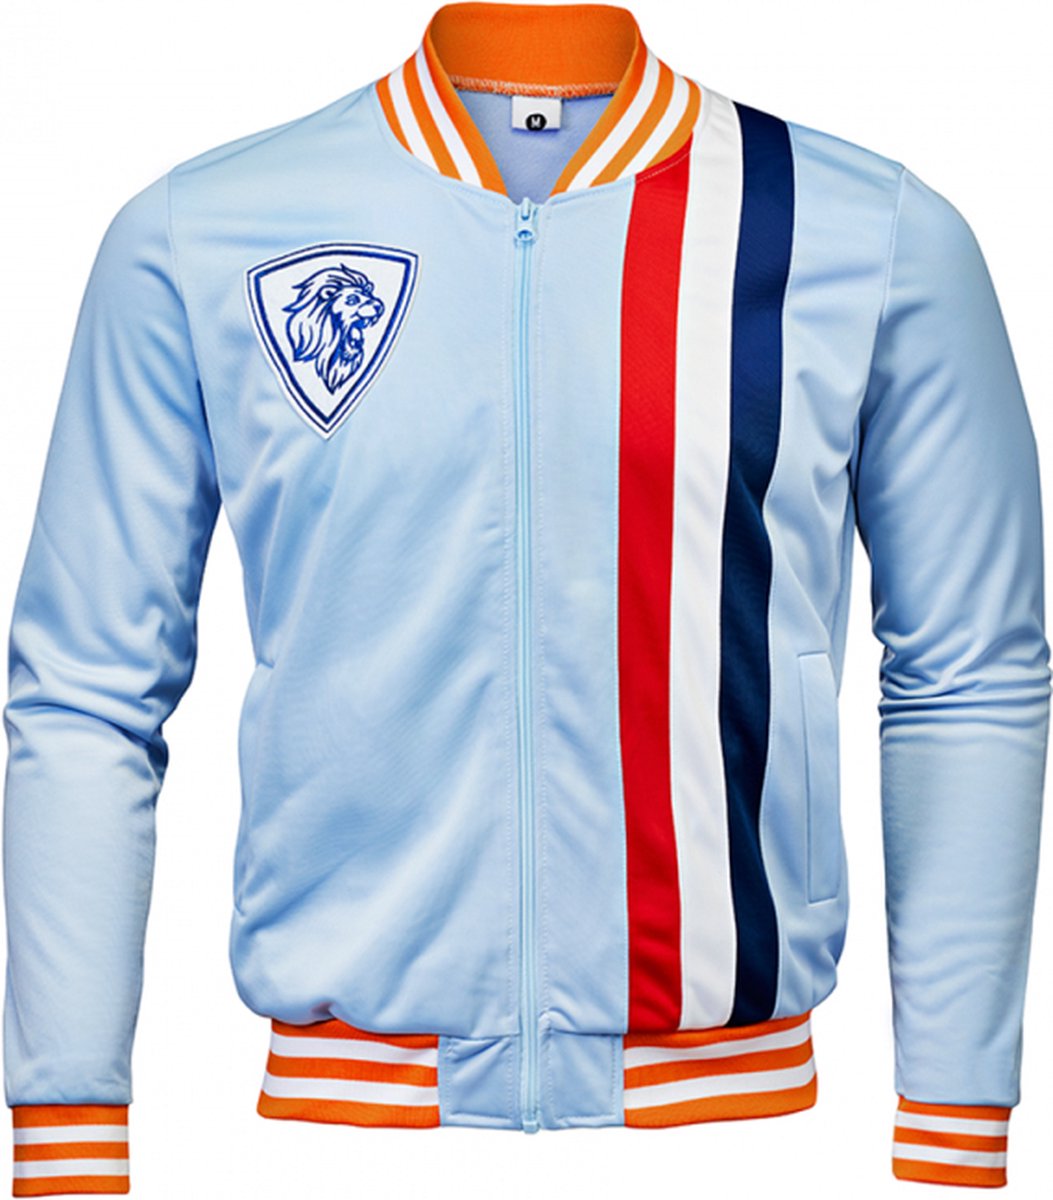 Trainings jas - Koningsdag kleding - Jack - Unisex Dames en Heren - Rood Wit Blauw Oranje - Maat XL